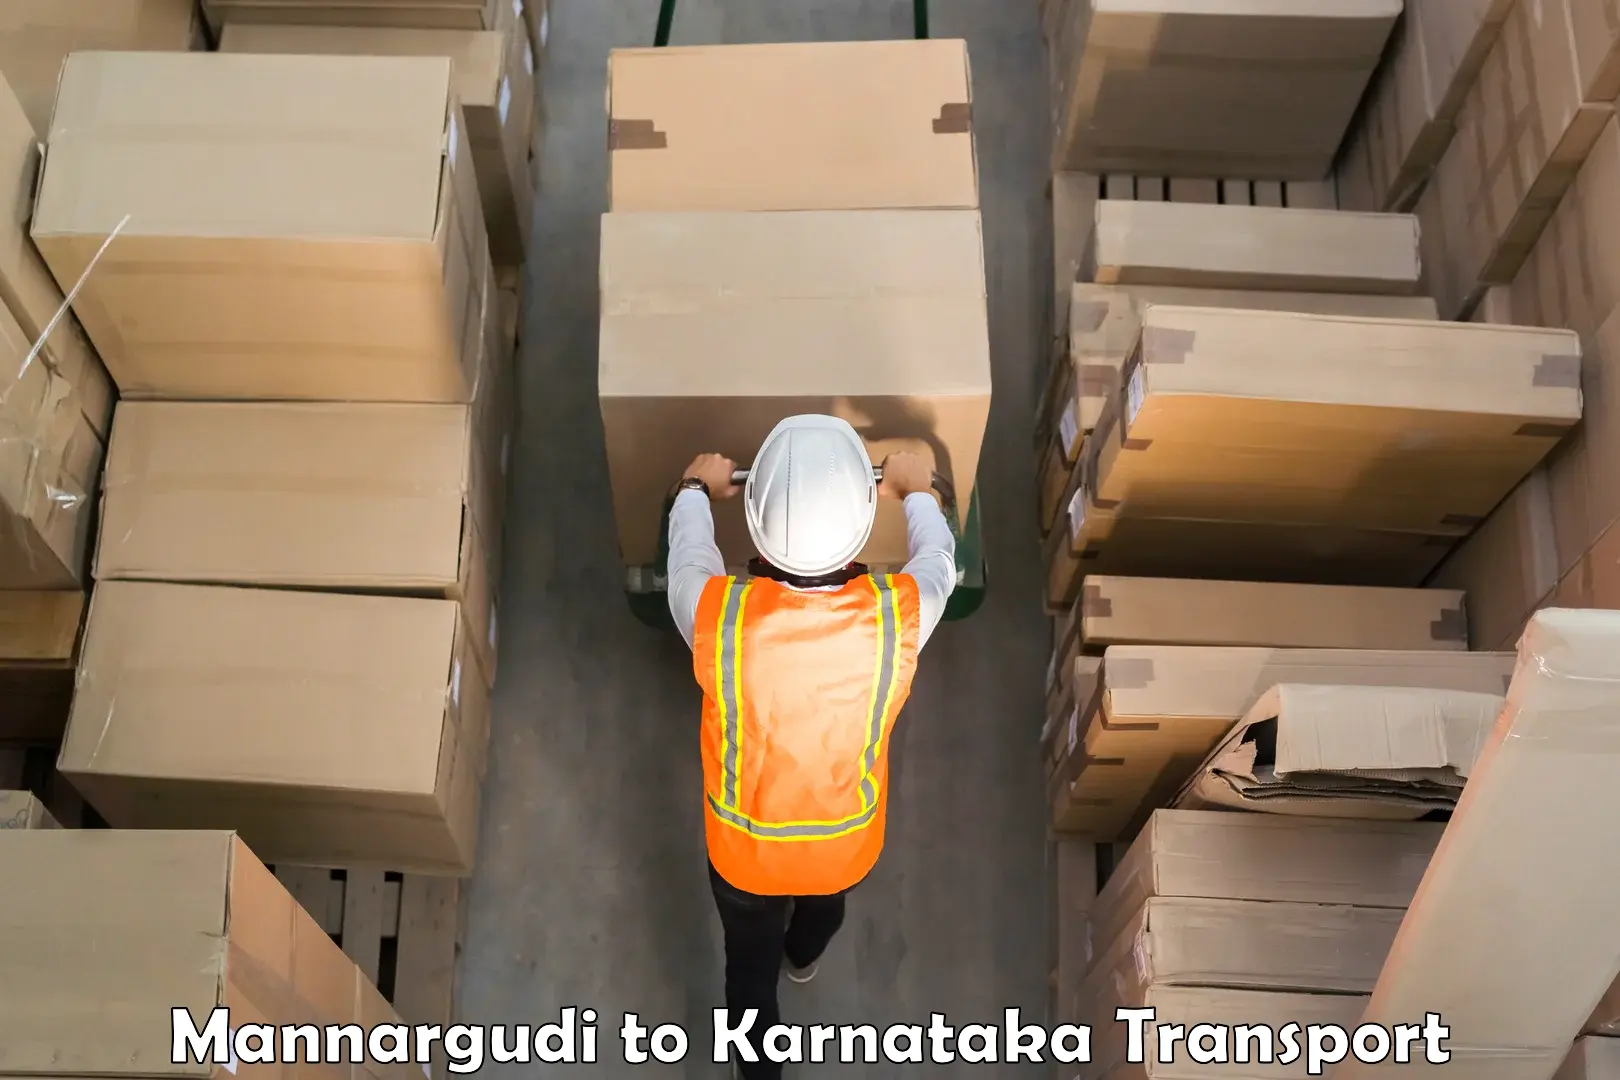 Truck transport companies in India Mannargudi to Navalgund